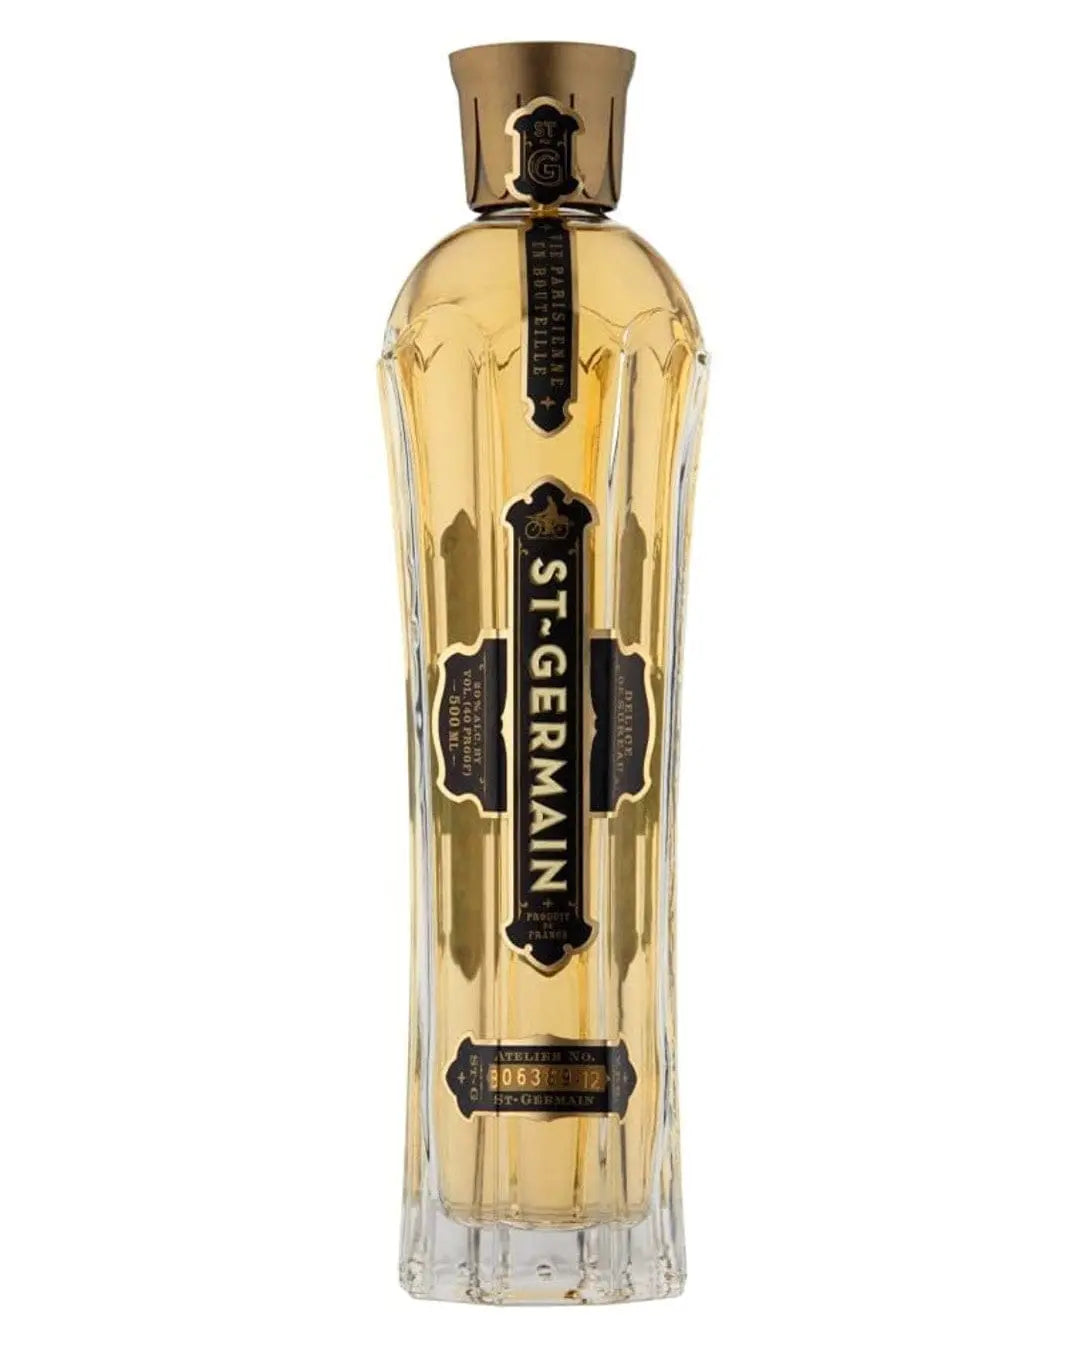 St. Germain Elderflower Liqueur, 50 cl Liqueurs & Other Spirits 5014271796185